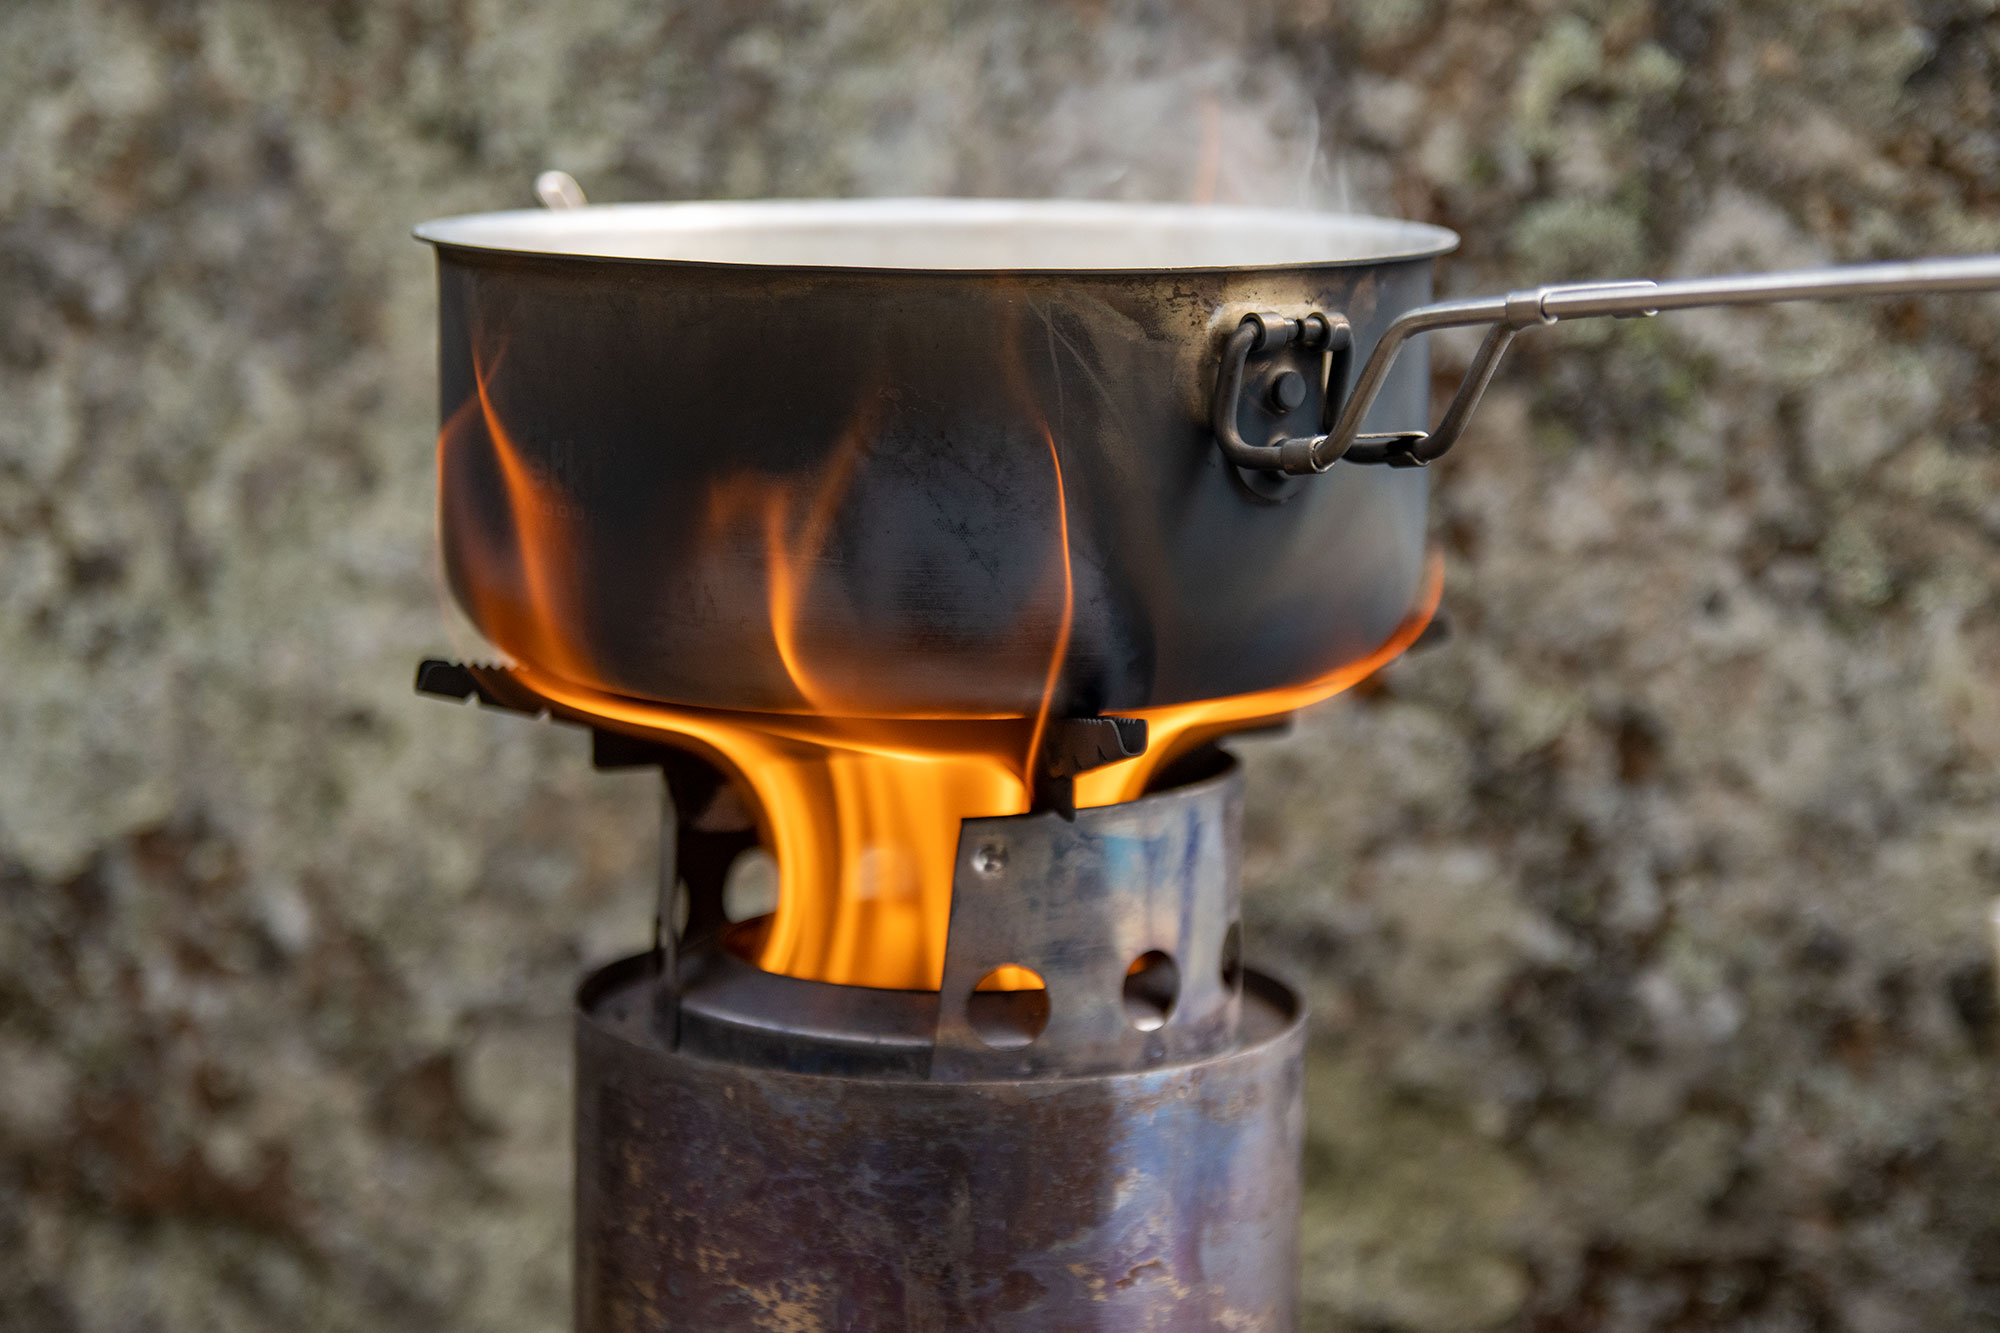 Litra vettä kuumenemassa pellettikäyttöisessä risukeittimessä.